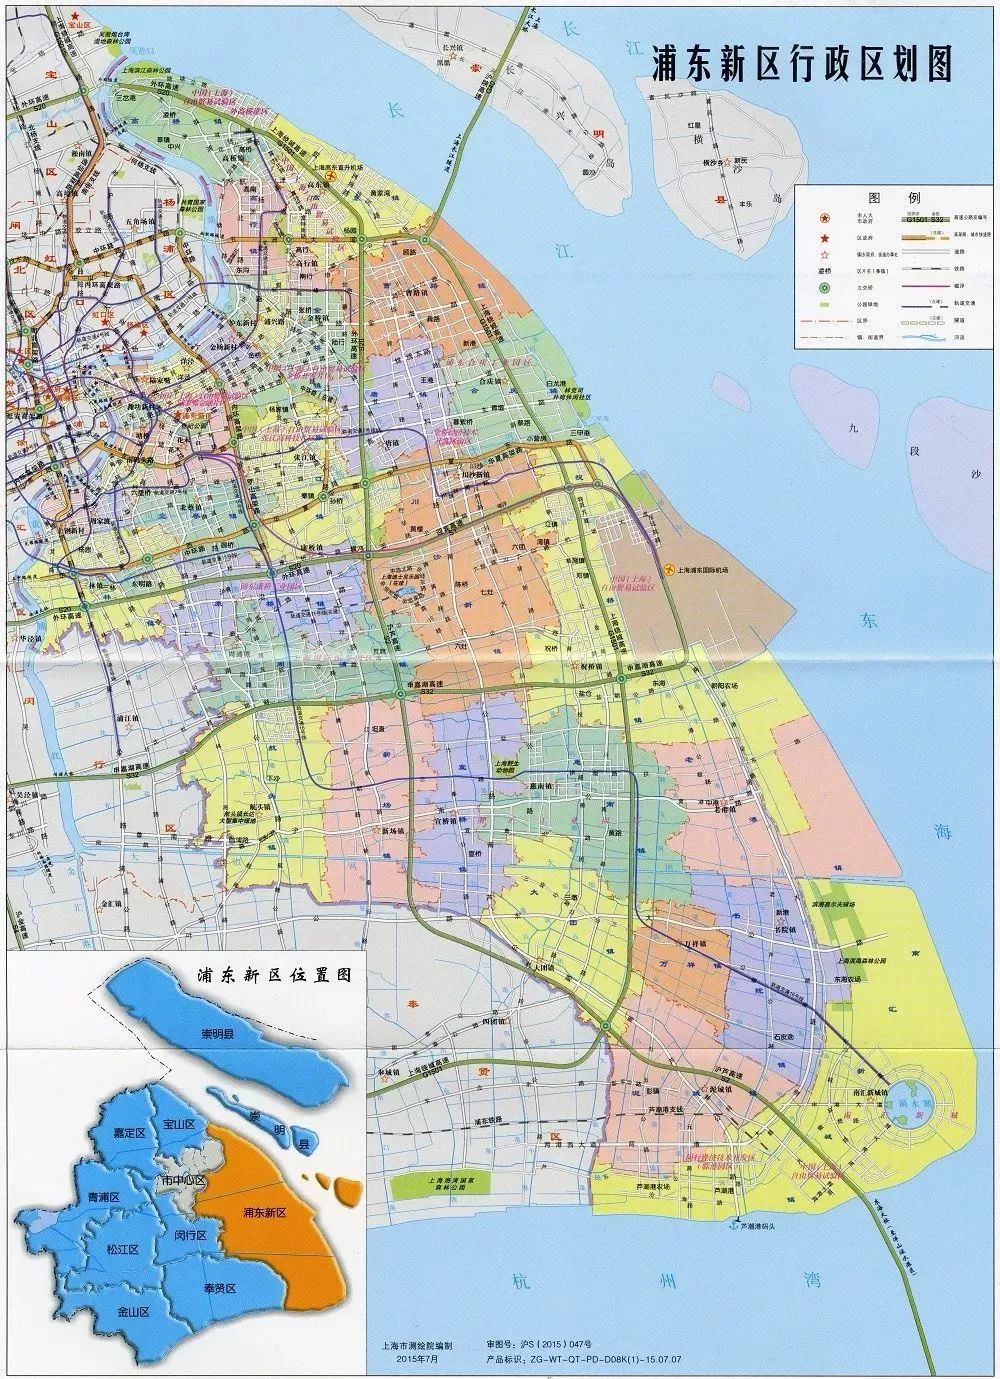 上海浦东新区地图 最新上海16区划分图